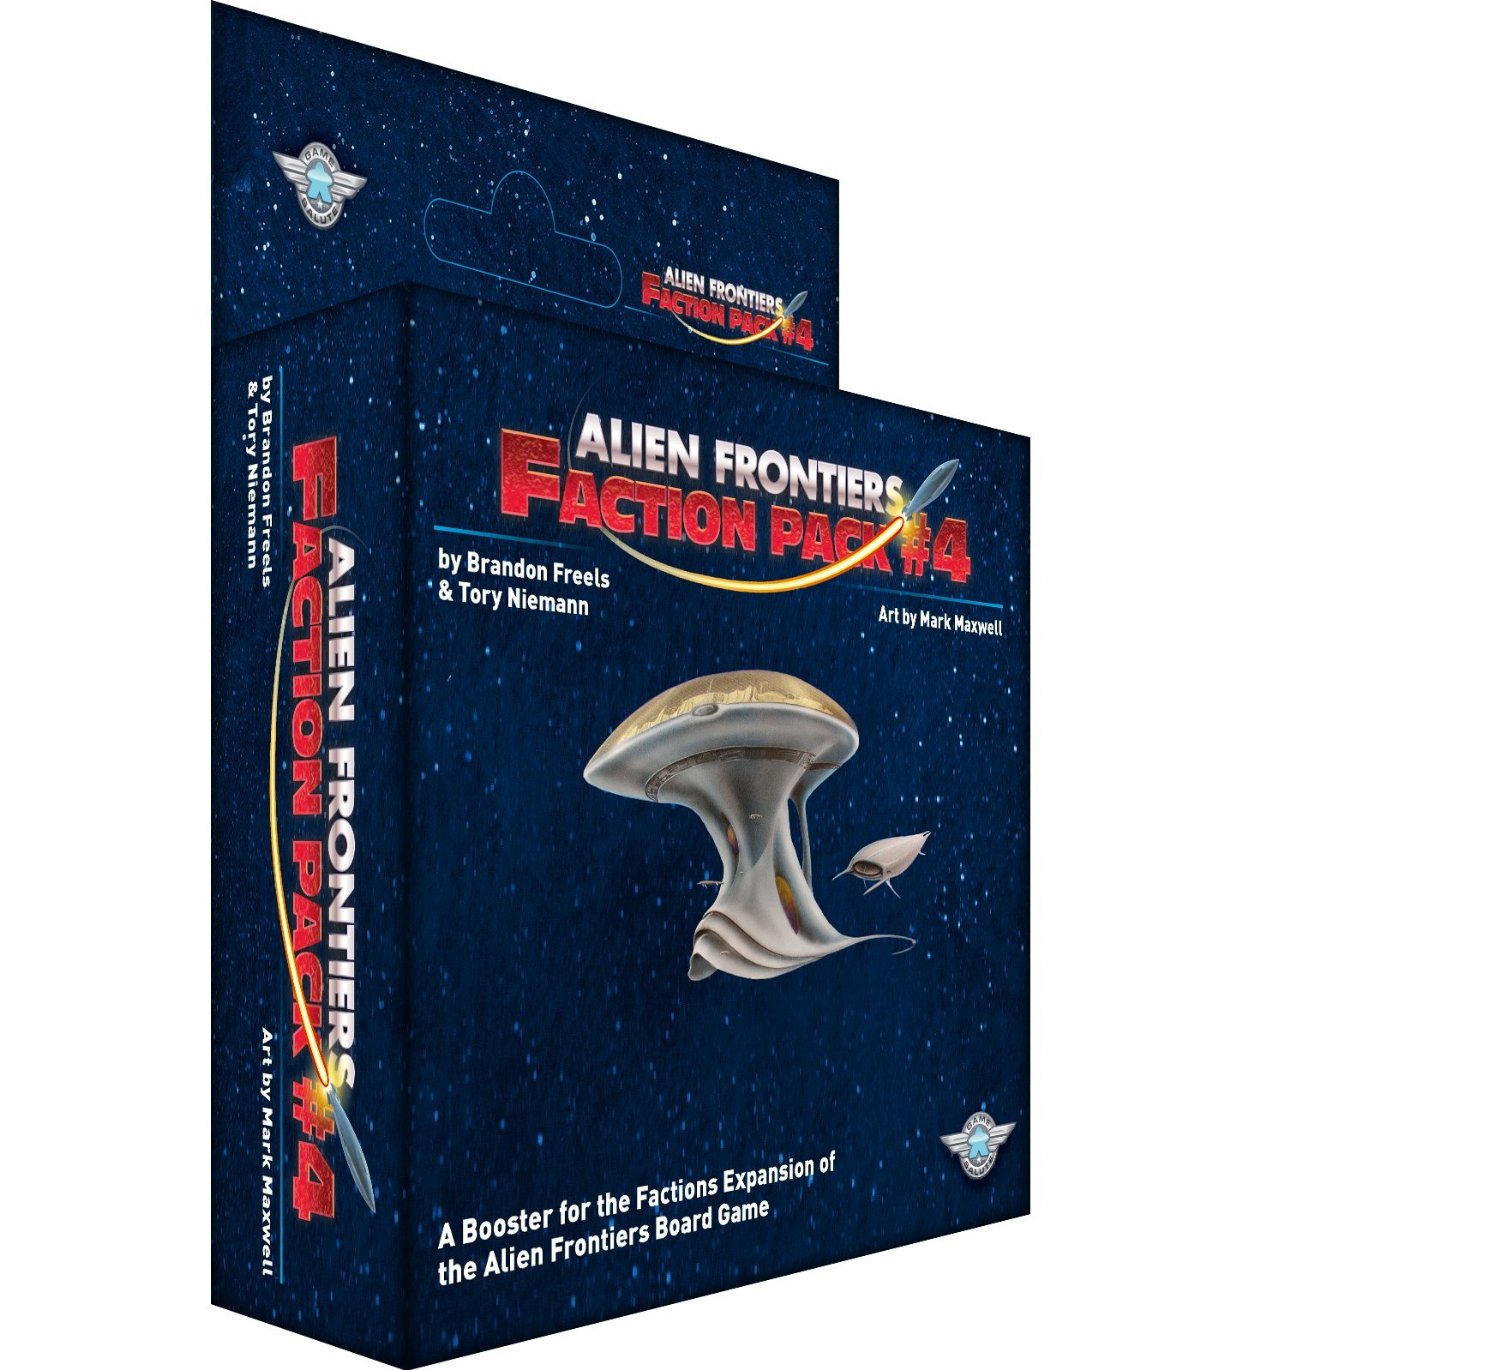 Alien Frontiers : Faction Pack 4